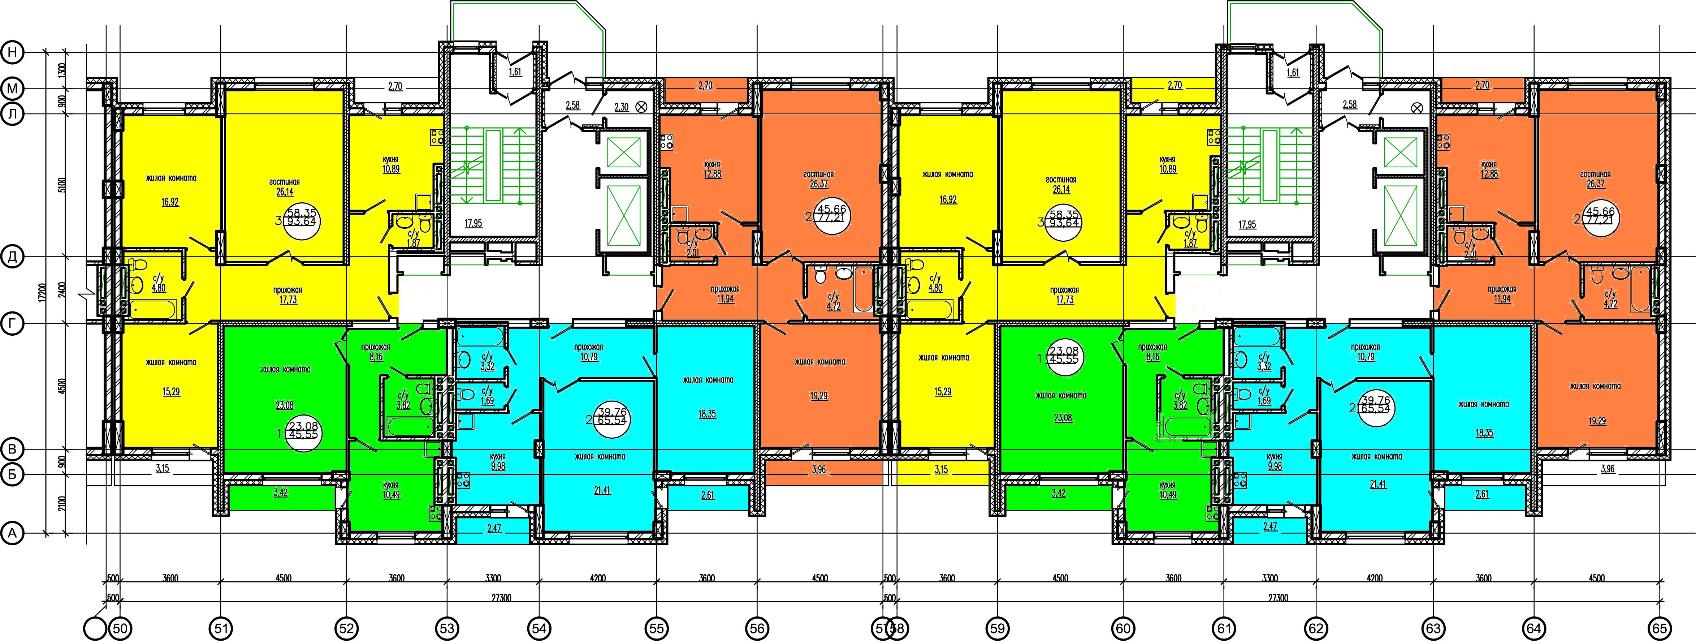 План этажа ЖК Дианит. 1 очередь. План типового этажа